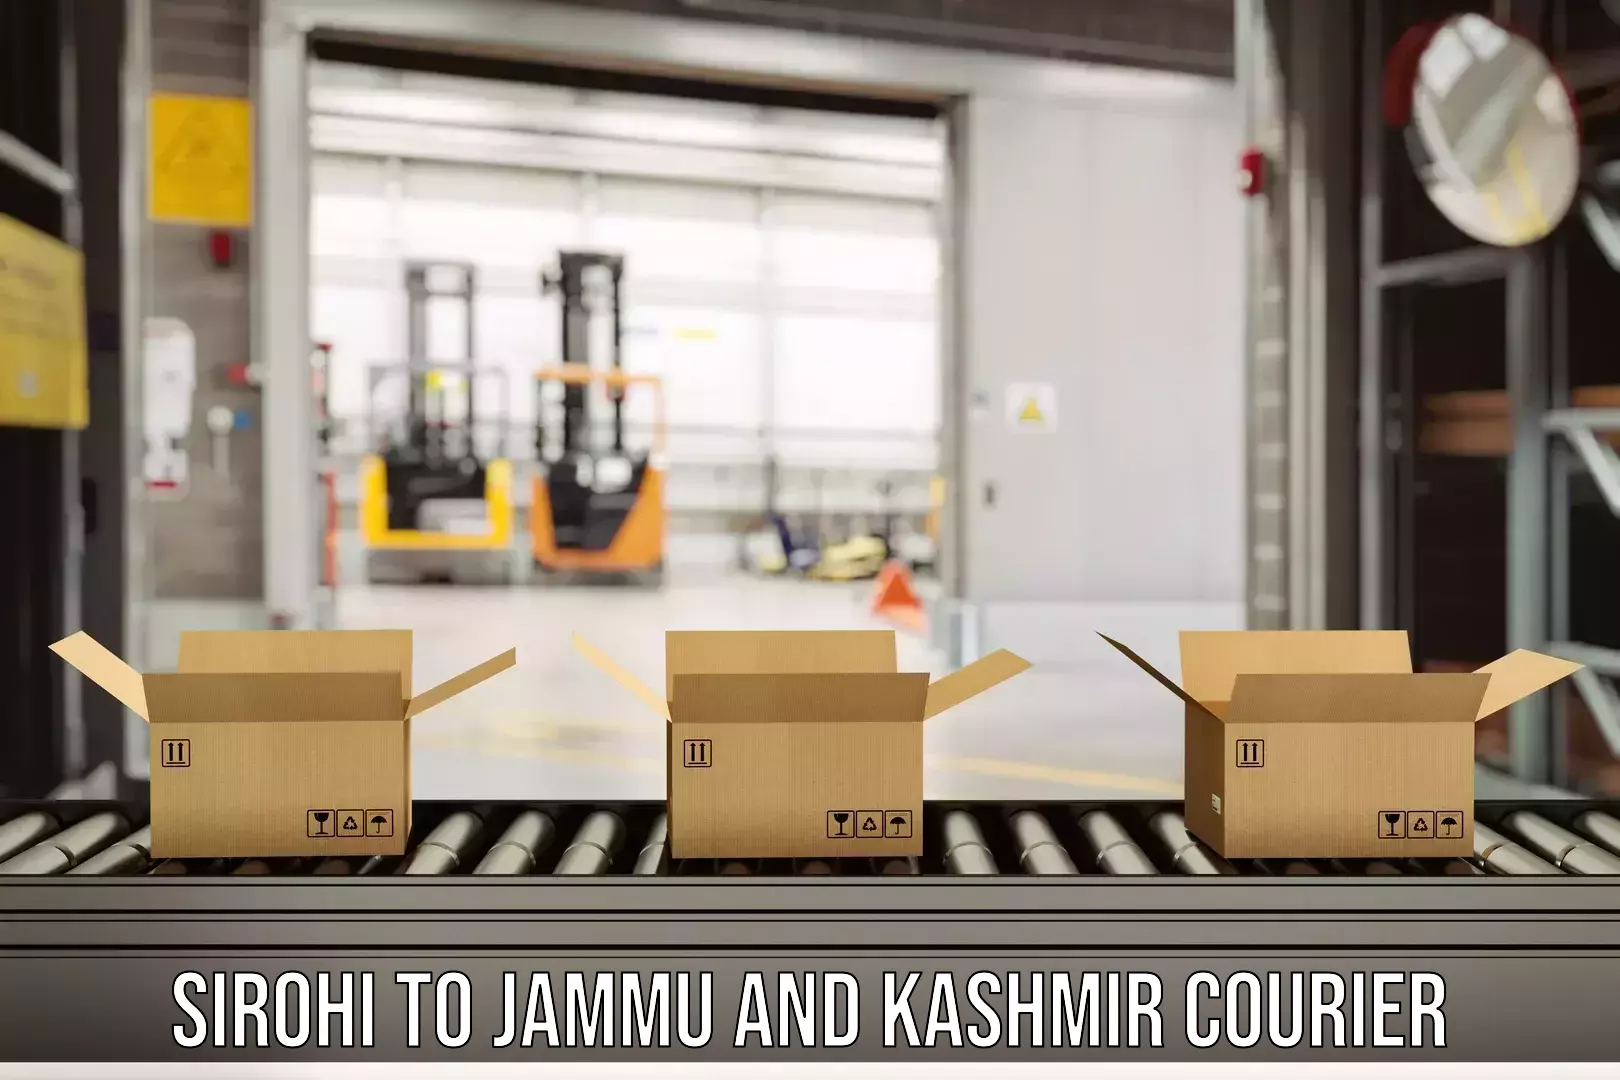 Expedited shipping methods Sirohi to Jammu